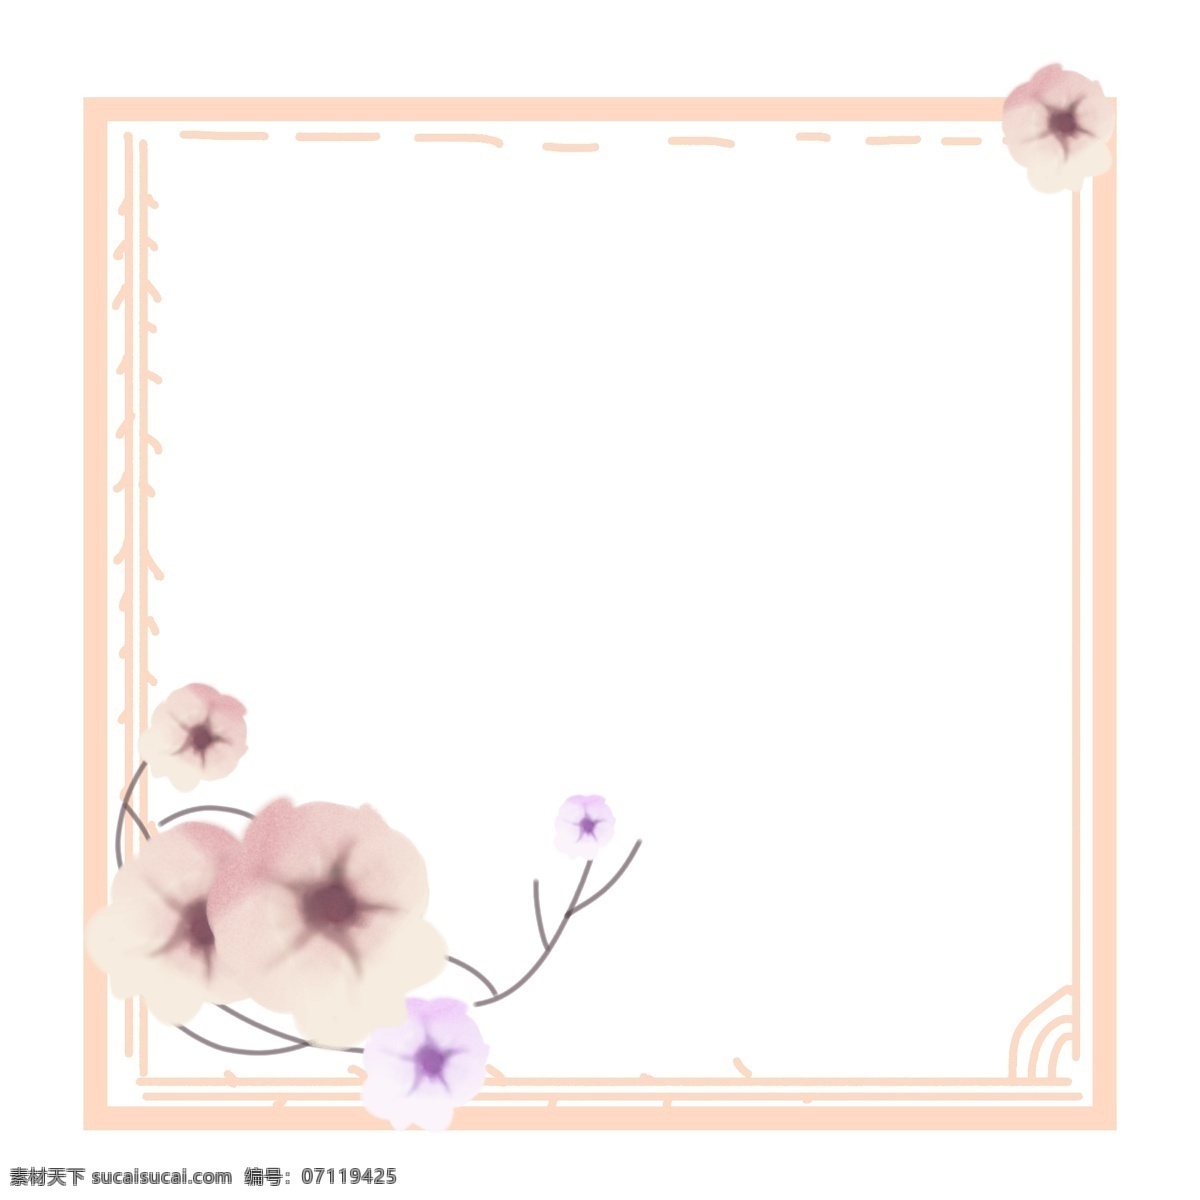 浅 粉色 棉花 浅色 边框 浅粉色棉花 紫色 浅色边框 花朵 手绘 少女粉 粉嫩的鲜花 花朵组合 小清新